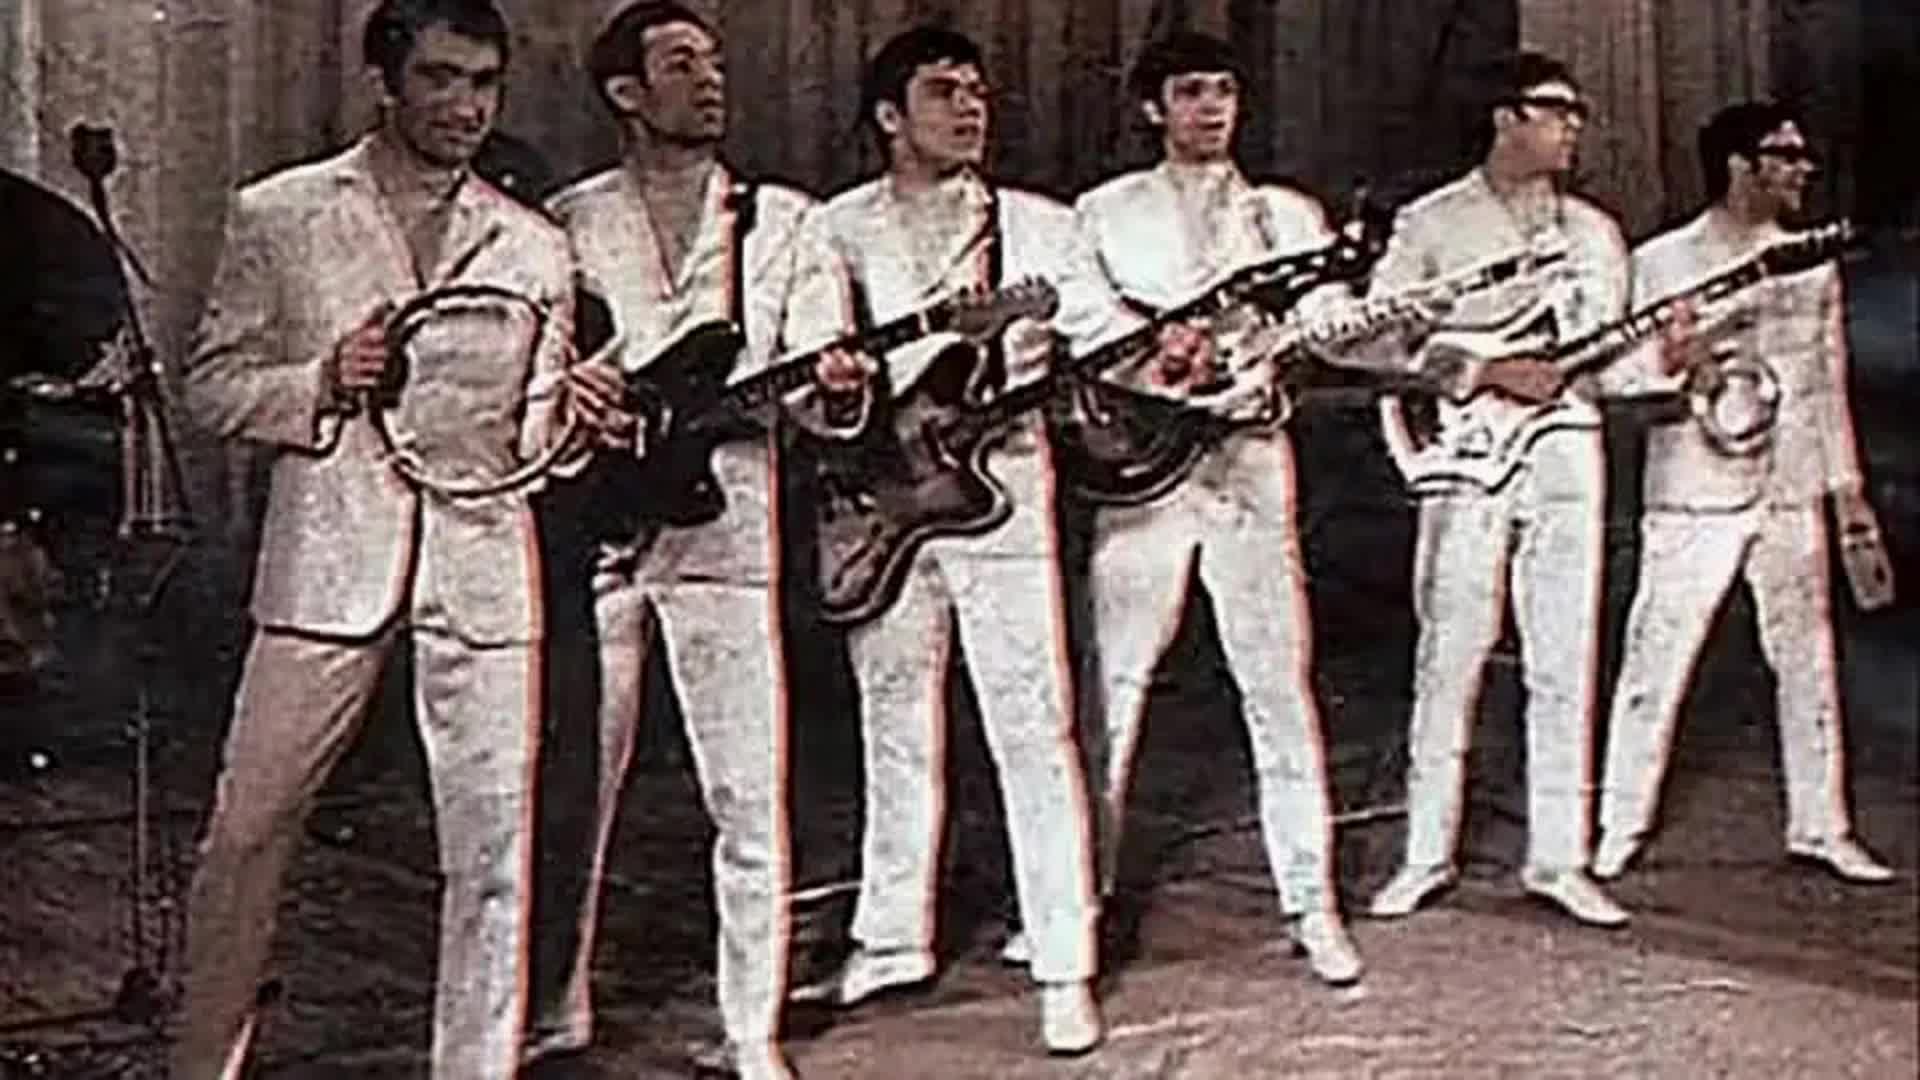 Минусовка поет гитара. Поющие гитары состав группы. ВИА Поющие гитары. ВИА "Поющие гитары", 1966 год.